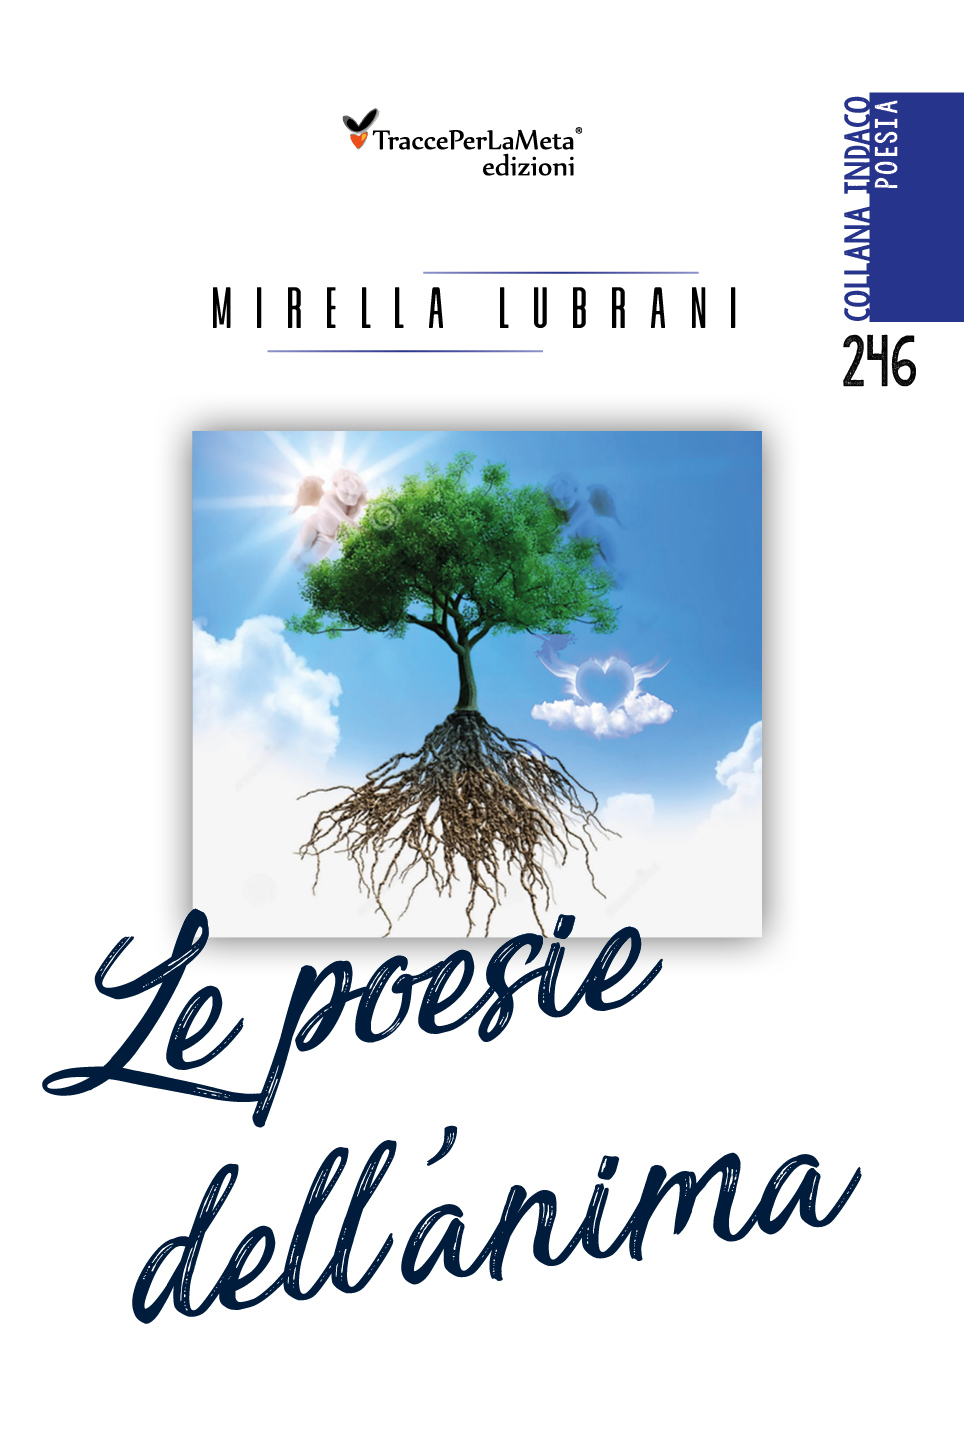 18.11.2019 – Ecco il video della presentazione della silloge della poetessa Mirella Lubrani, intitolata “Le poesie dell’anima”